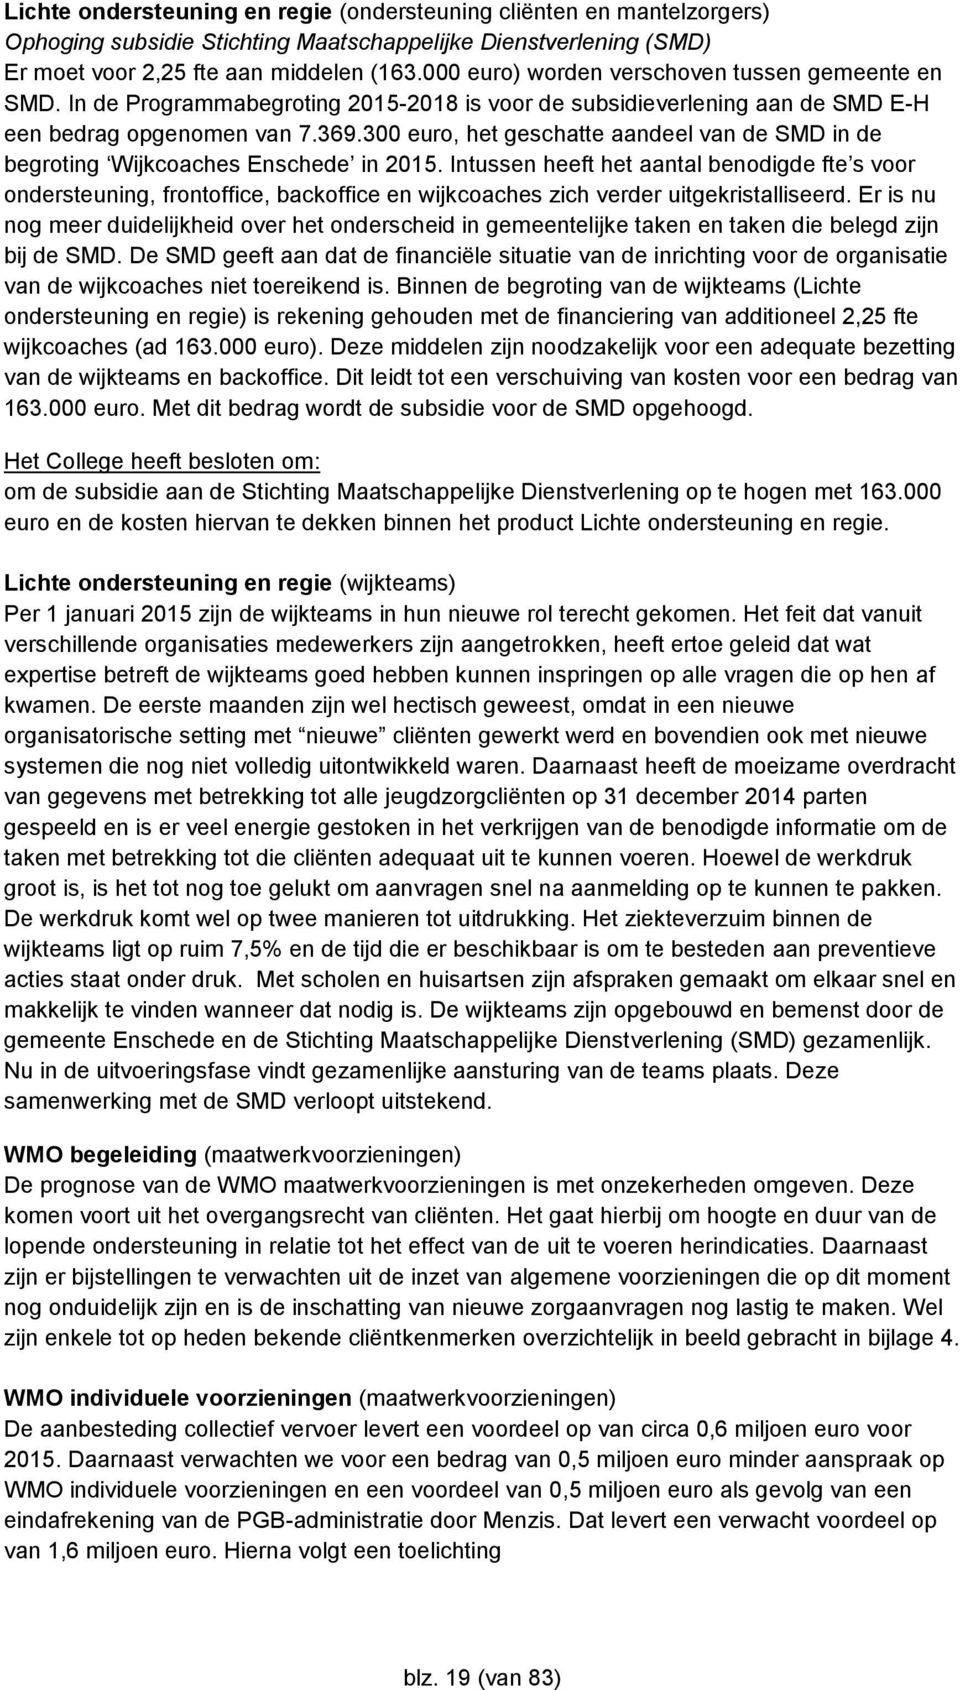 300 euro, het geschatte aandeel van de SMD in de begroting Wijkcoaches Enschede in 2015.